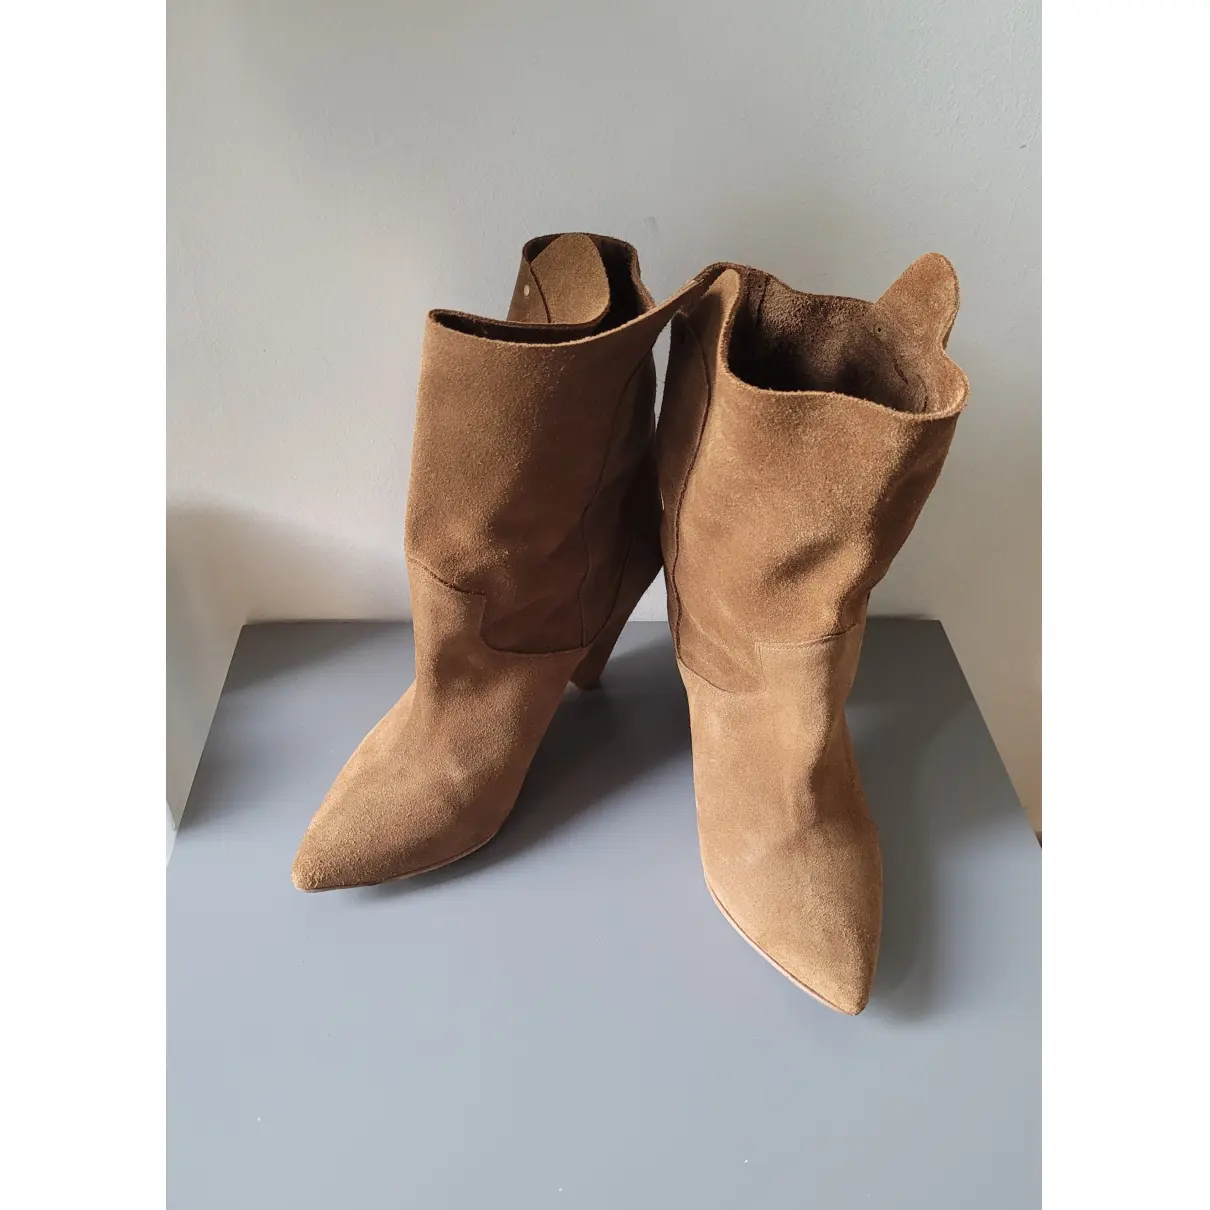 Buy Jerome Dreyfuss Western boots online